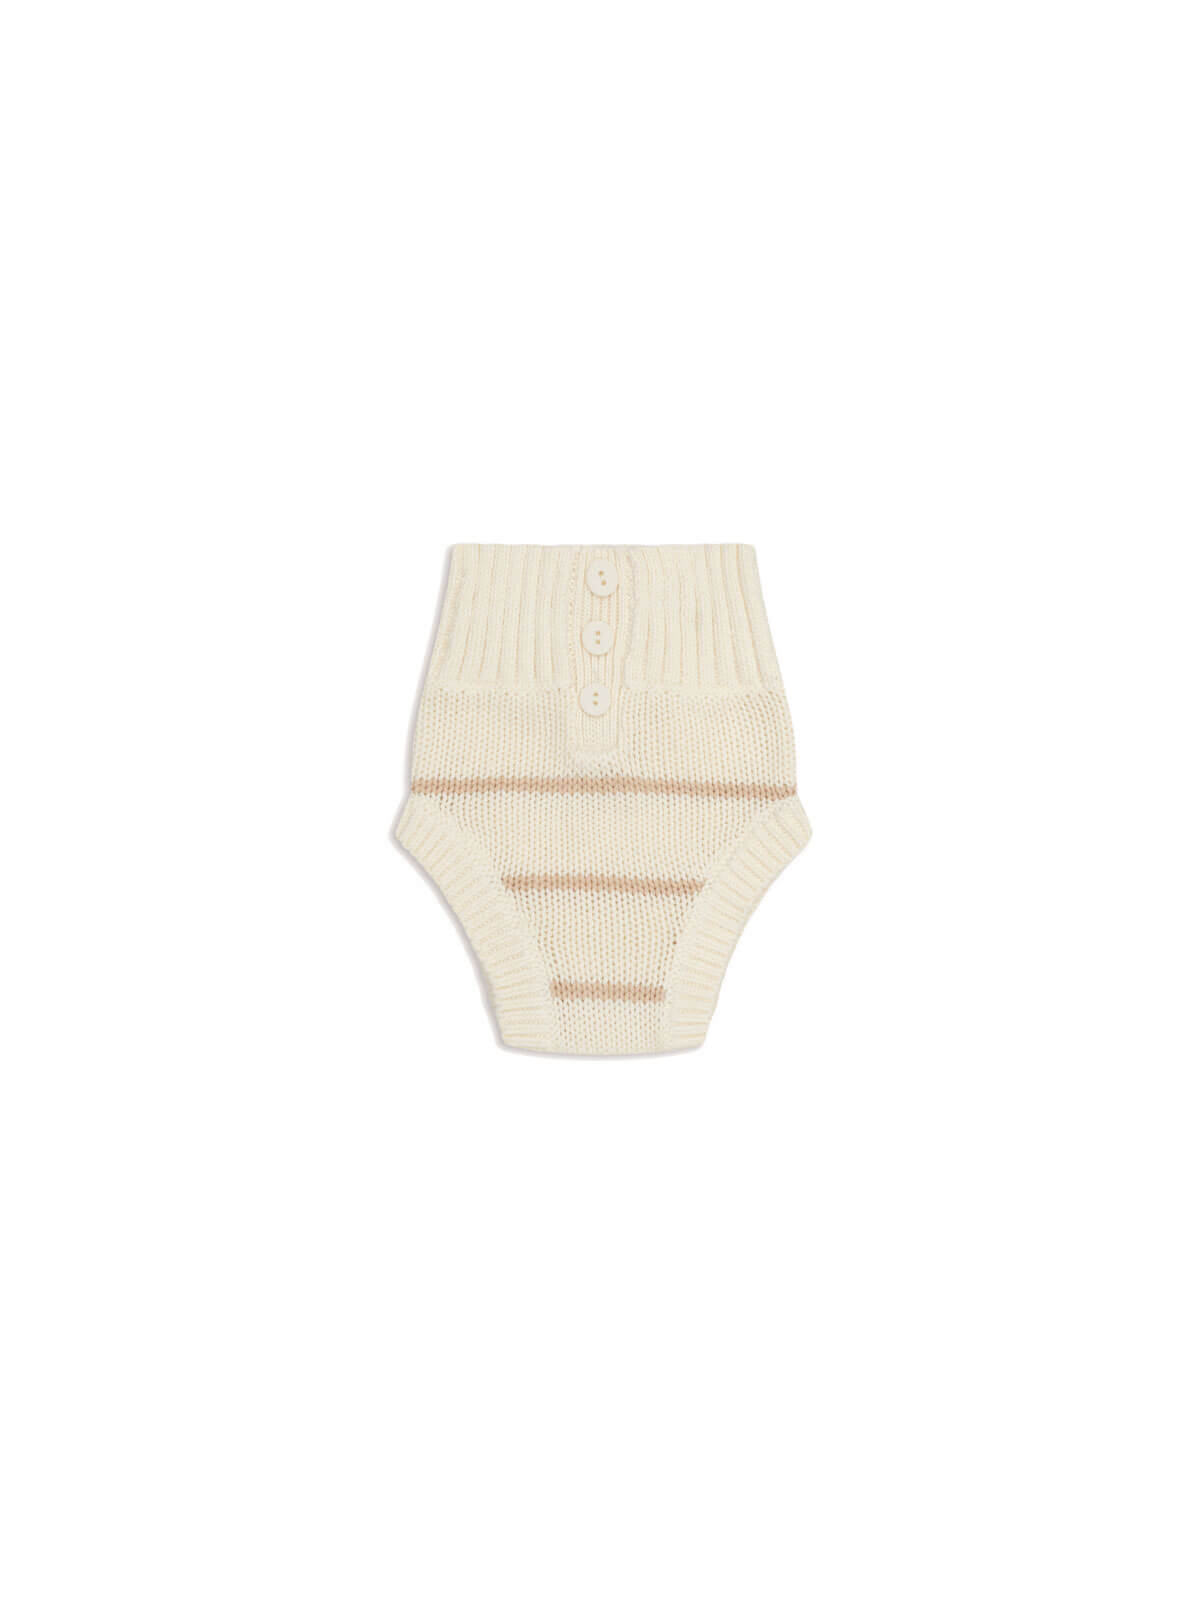 Dusky Knit Bloomers - Sand Stripe